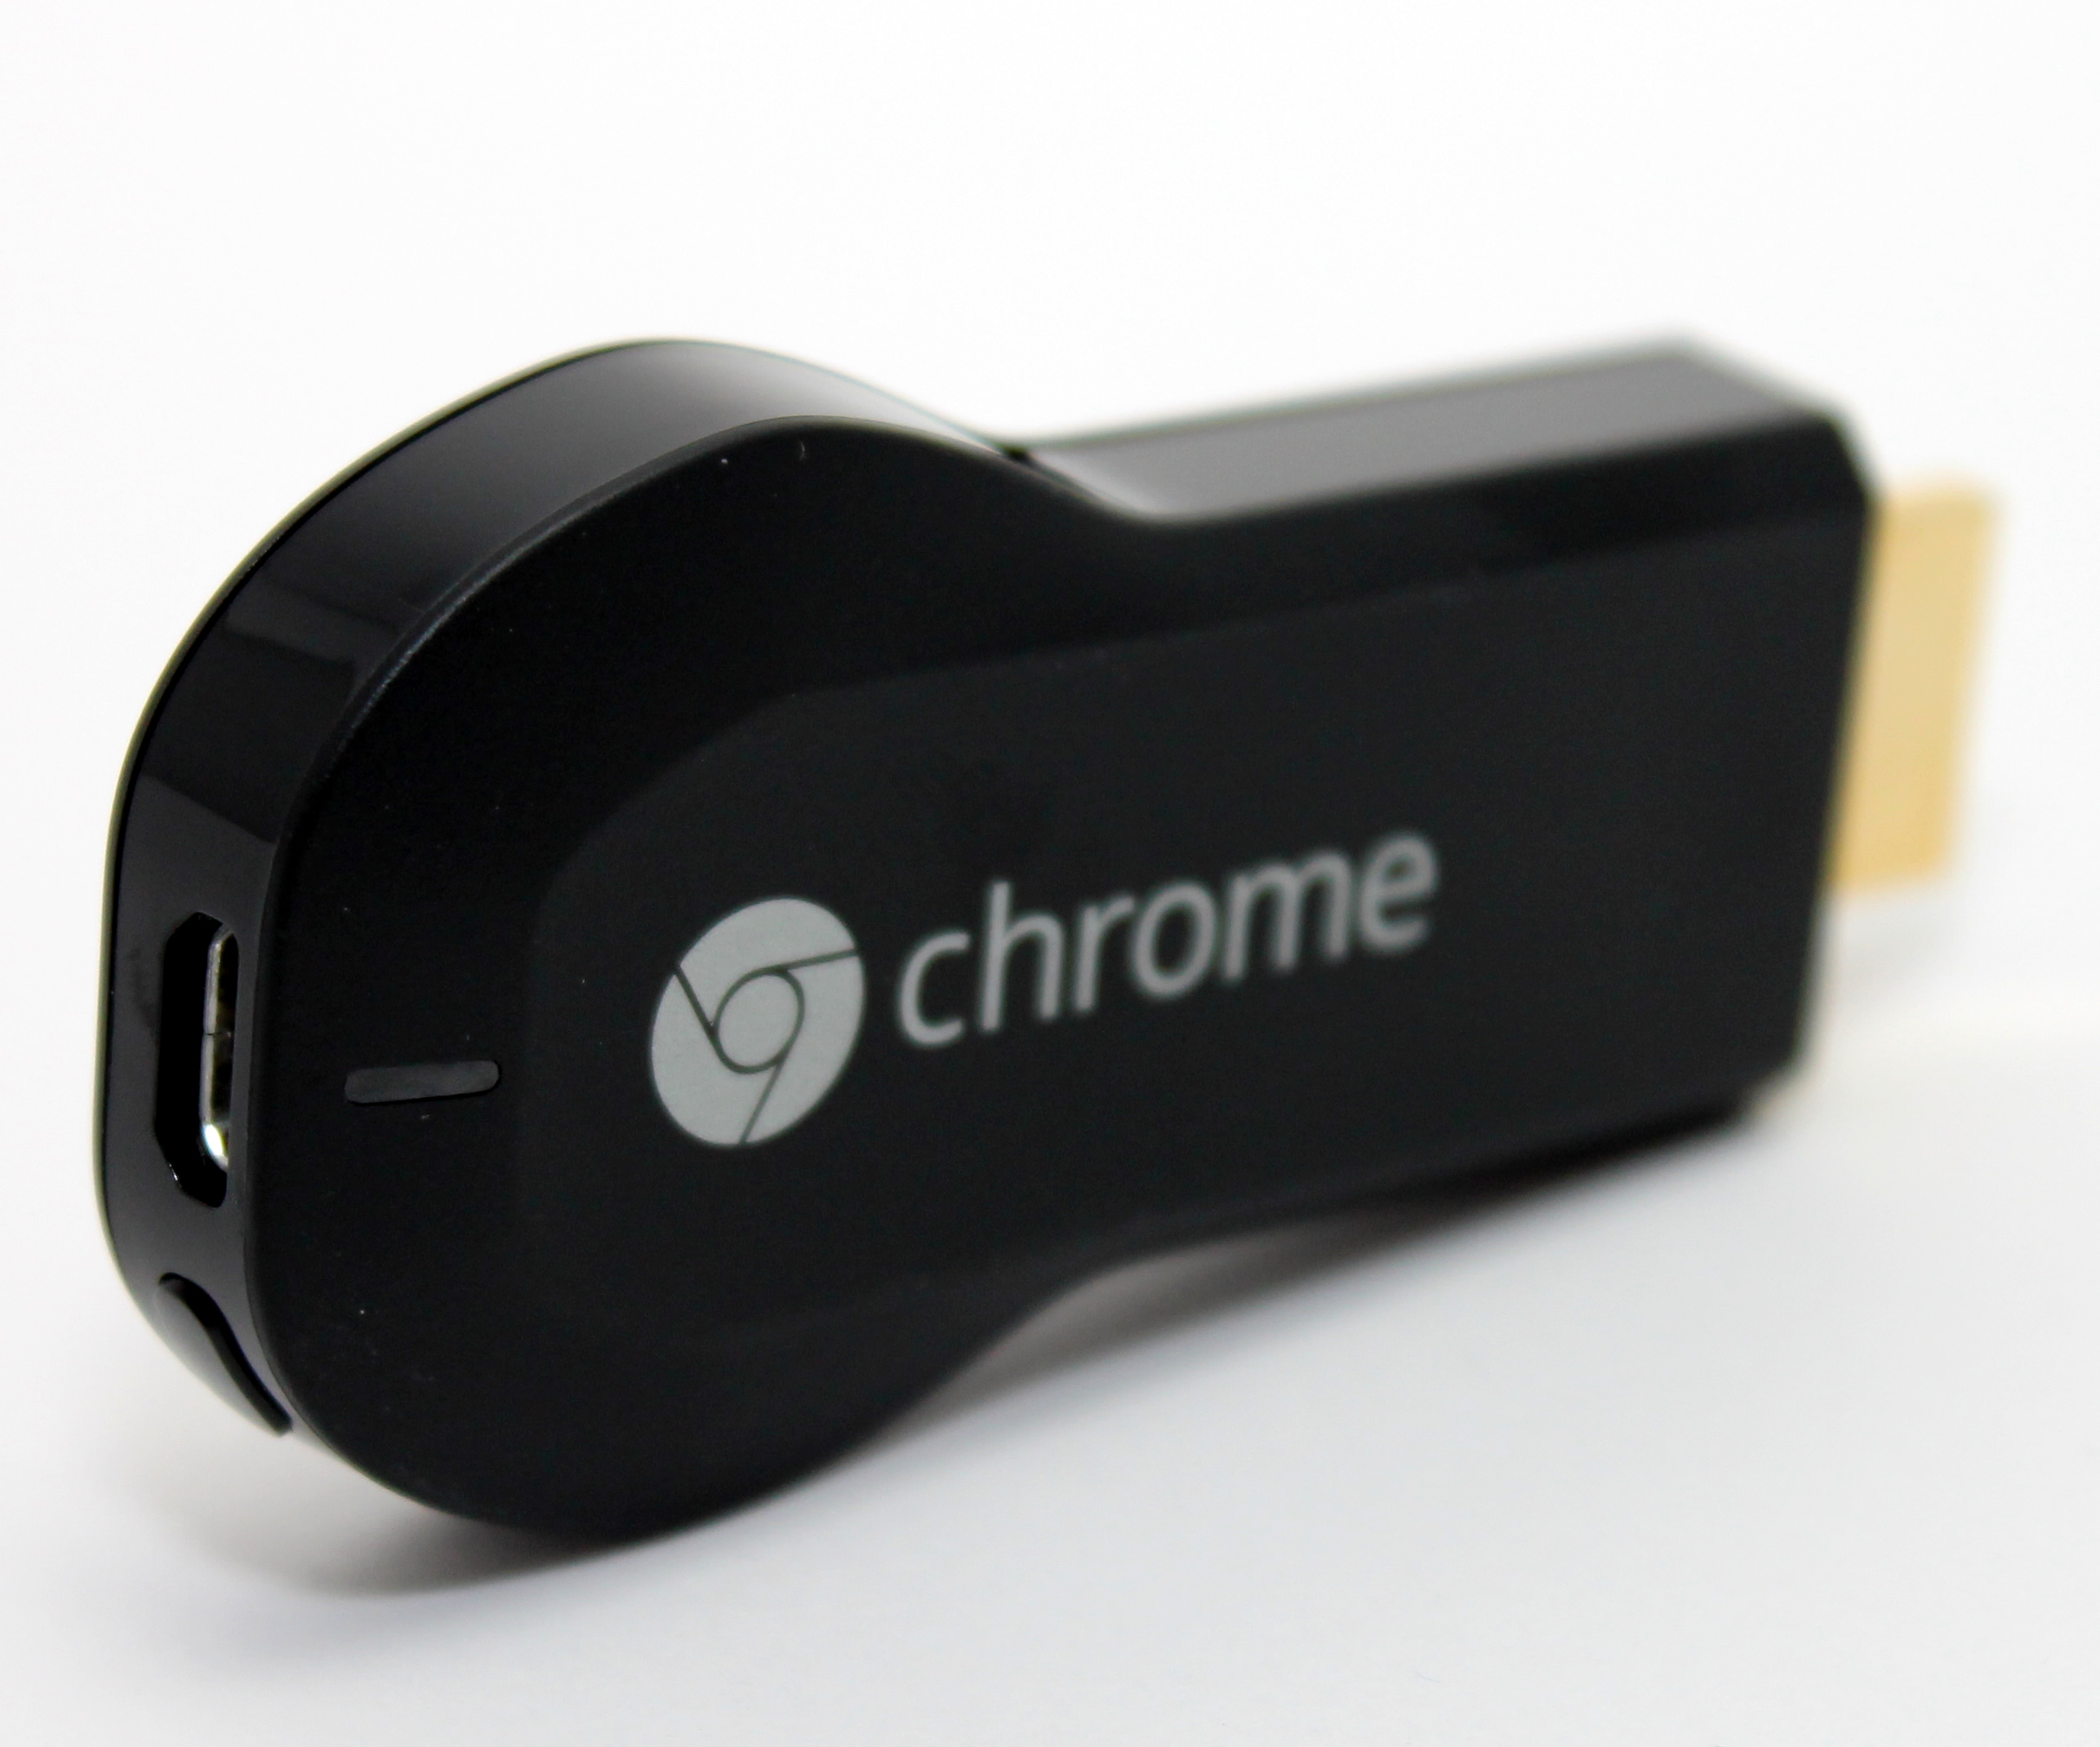 google chromecast review 2022